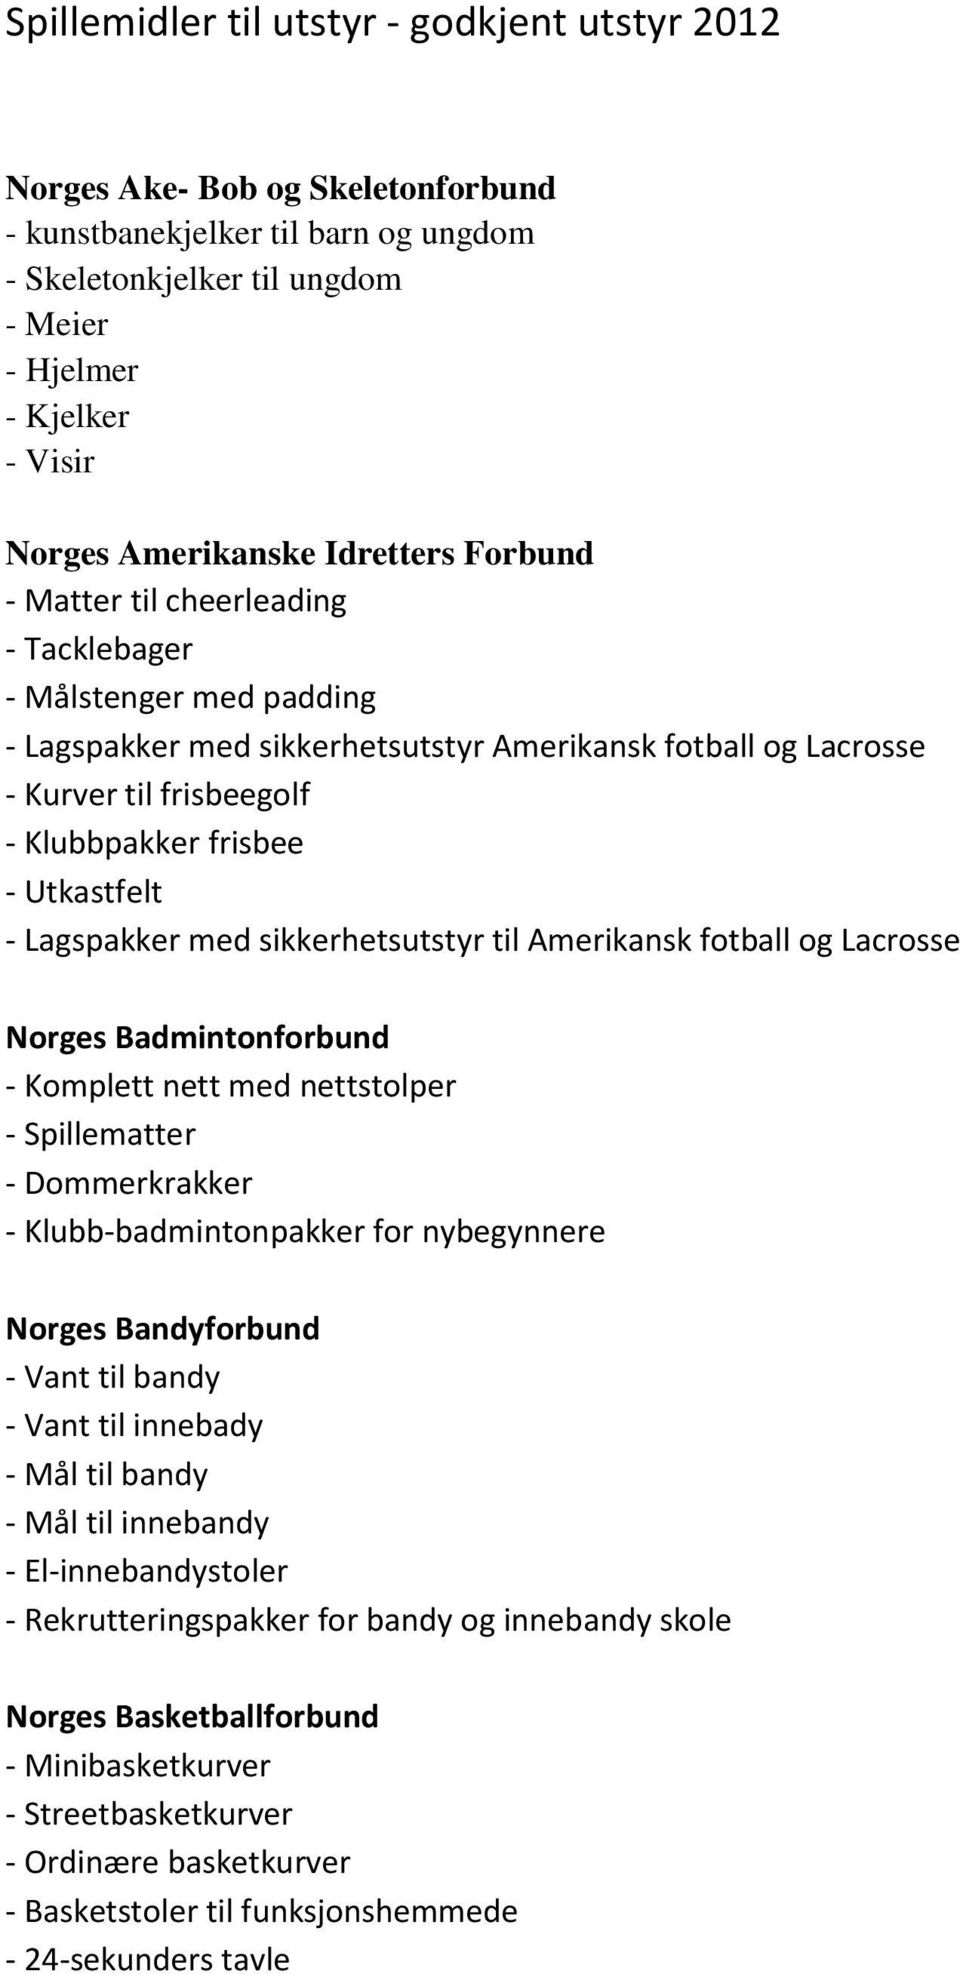 frisbee - Utkastfelt - Lagspakker med sikkerhetsutstyr til Amerikansk fotball og Lacrosse Norges Badmintonforbund - Komplett nett med nettstolper - Spillematter - Dommerkrakker -